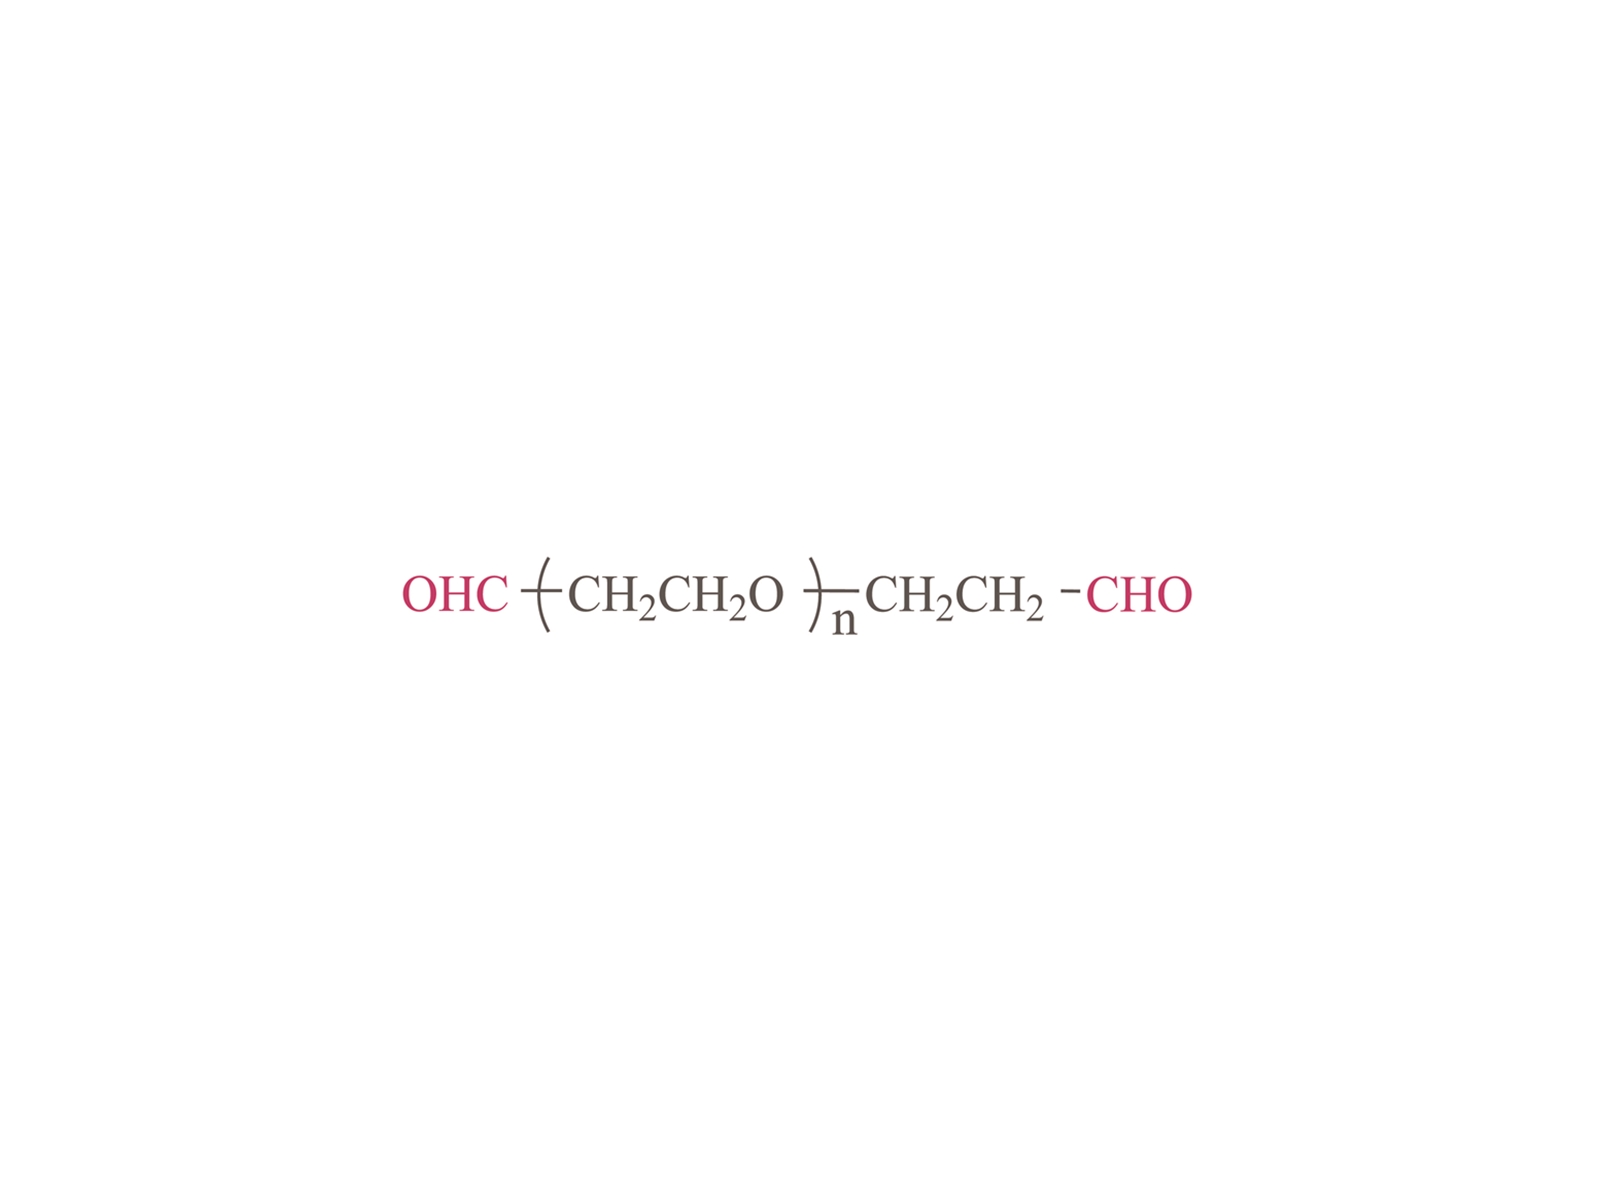 α, ω-diformyl โพลี (เอทิลีนไกลคอล) [ohc-peg-cho]